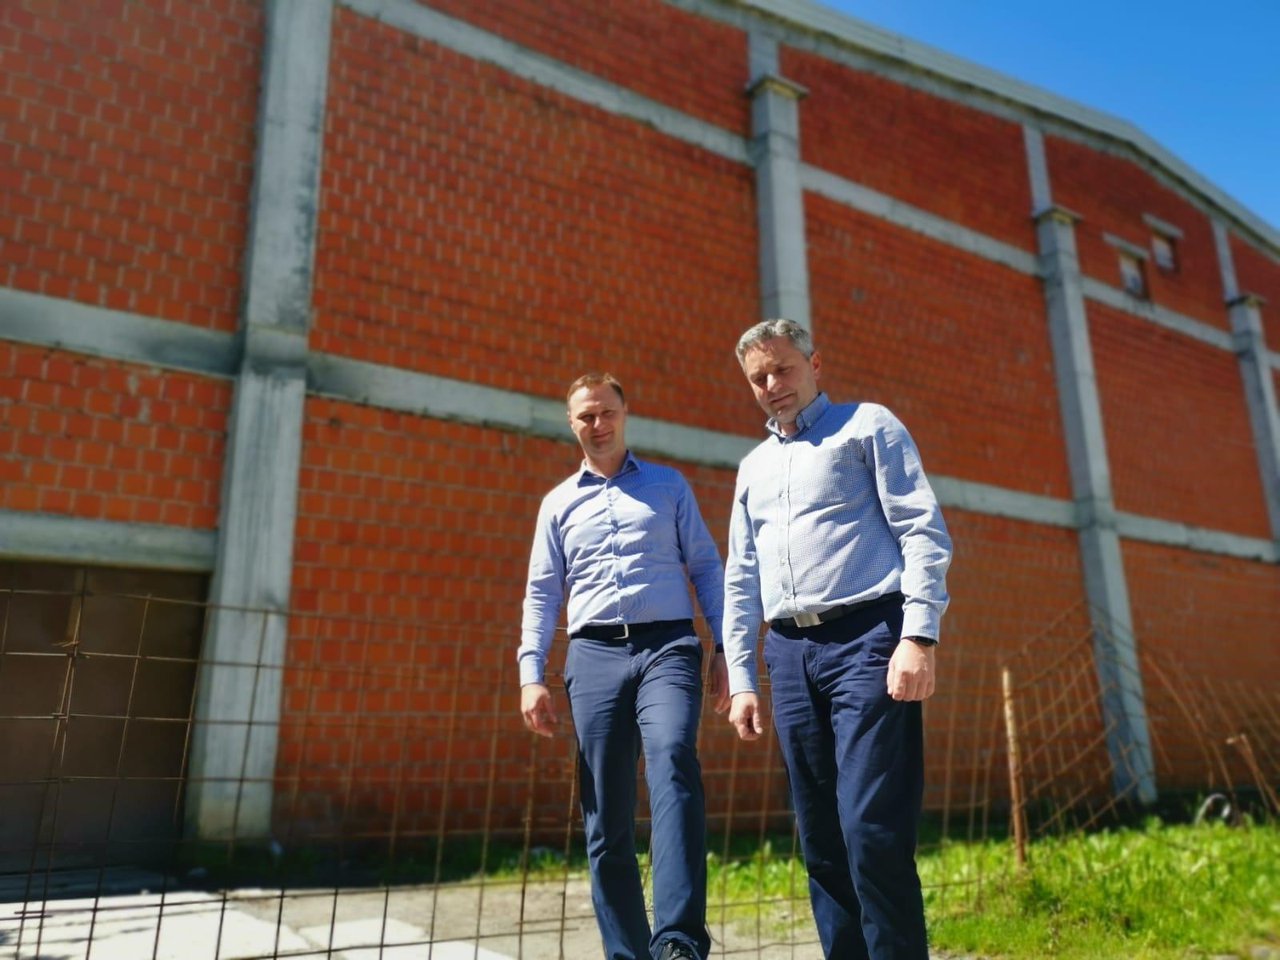 Fotografija: Kandidat za župana Marko Marušić i načelnik Općine Hercegovac Boro Bašljan ispred nedovršene dvorane/Foto: HDZ